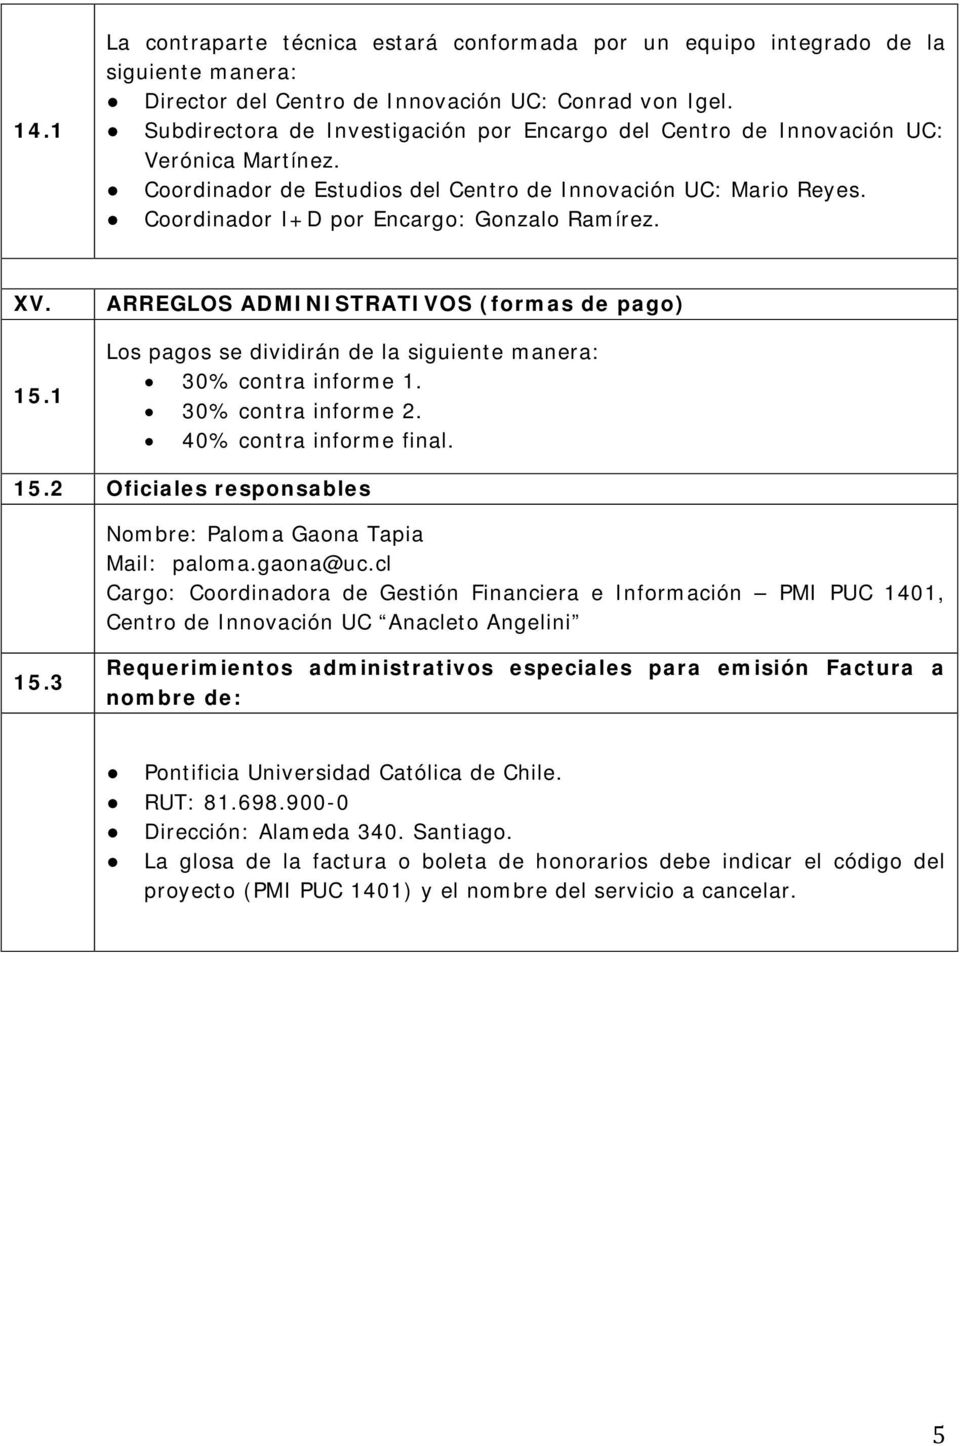 Coordinador I+D por Encargo: Gonzalo Ramírez. XV. 15.1 ARREGLOS ADMINISTRATIVOS (formas de pago) Los pagos se dividirán de la siguiente manera: 30% contra informe 1. 30% contra informe 2.